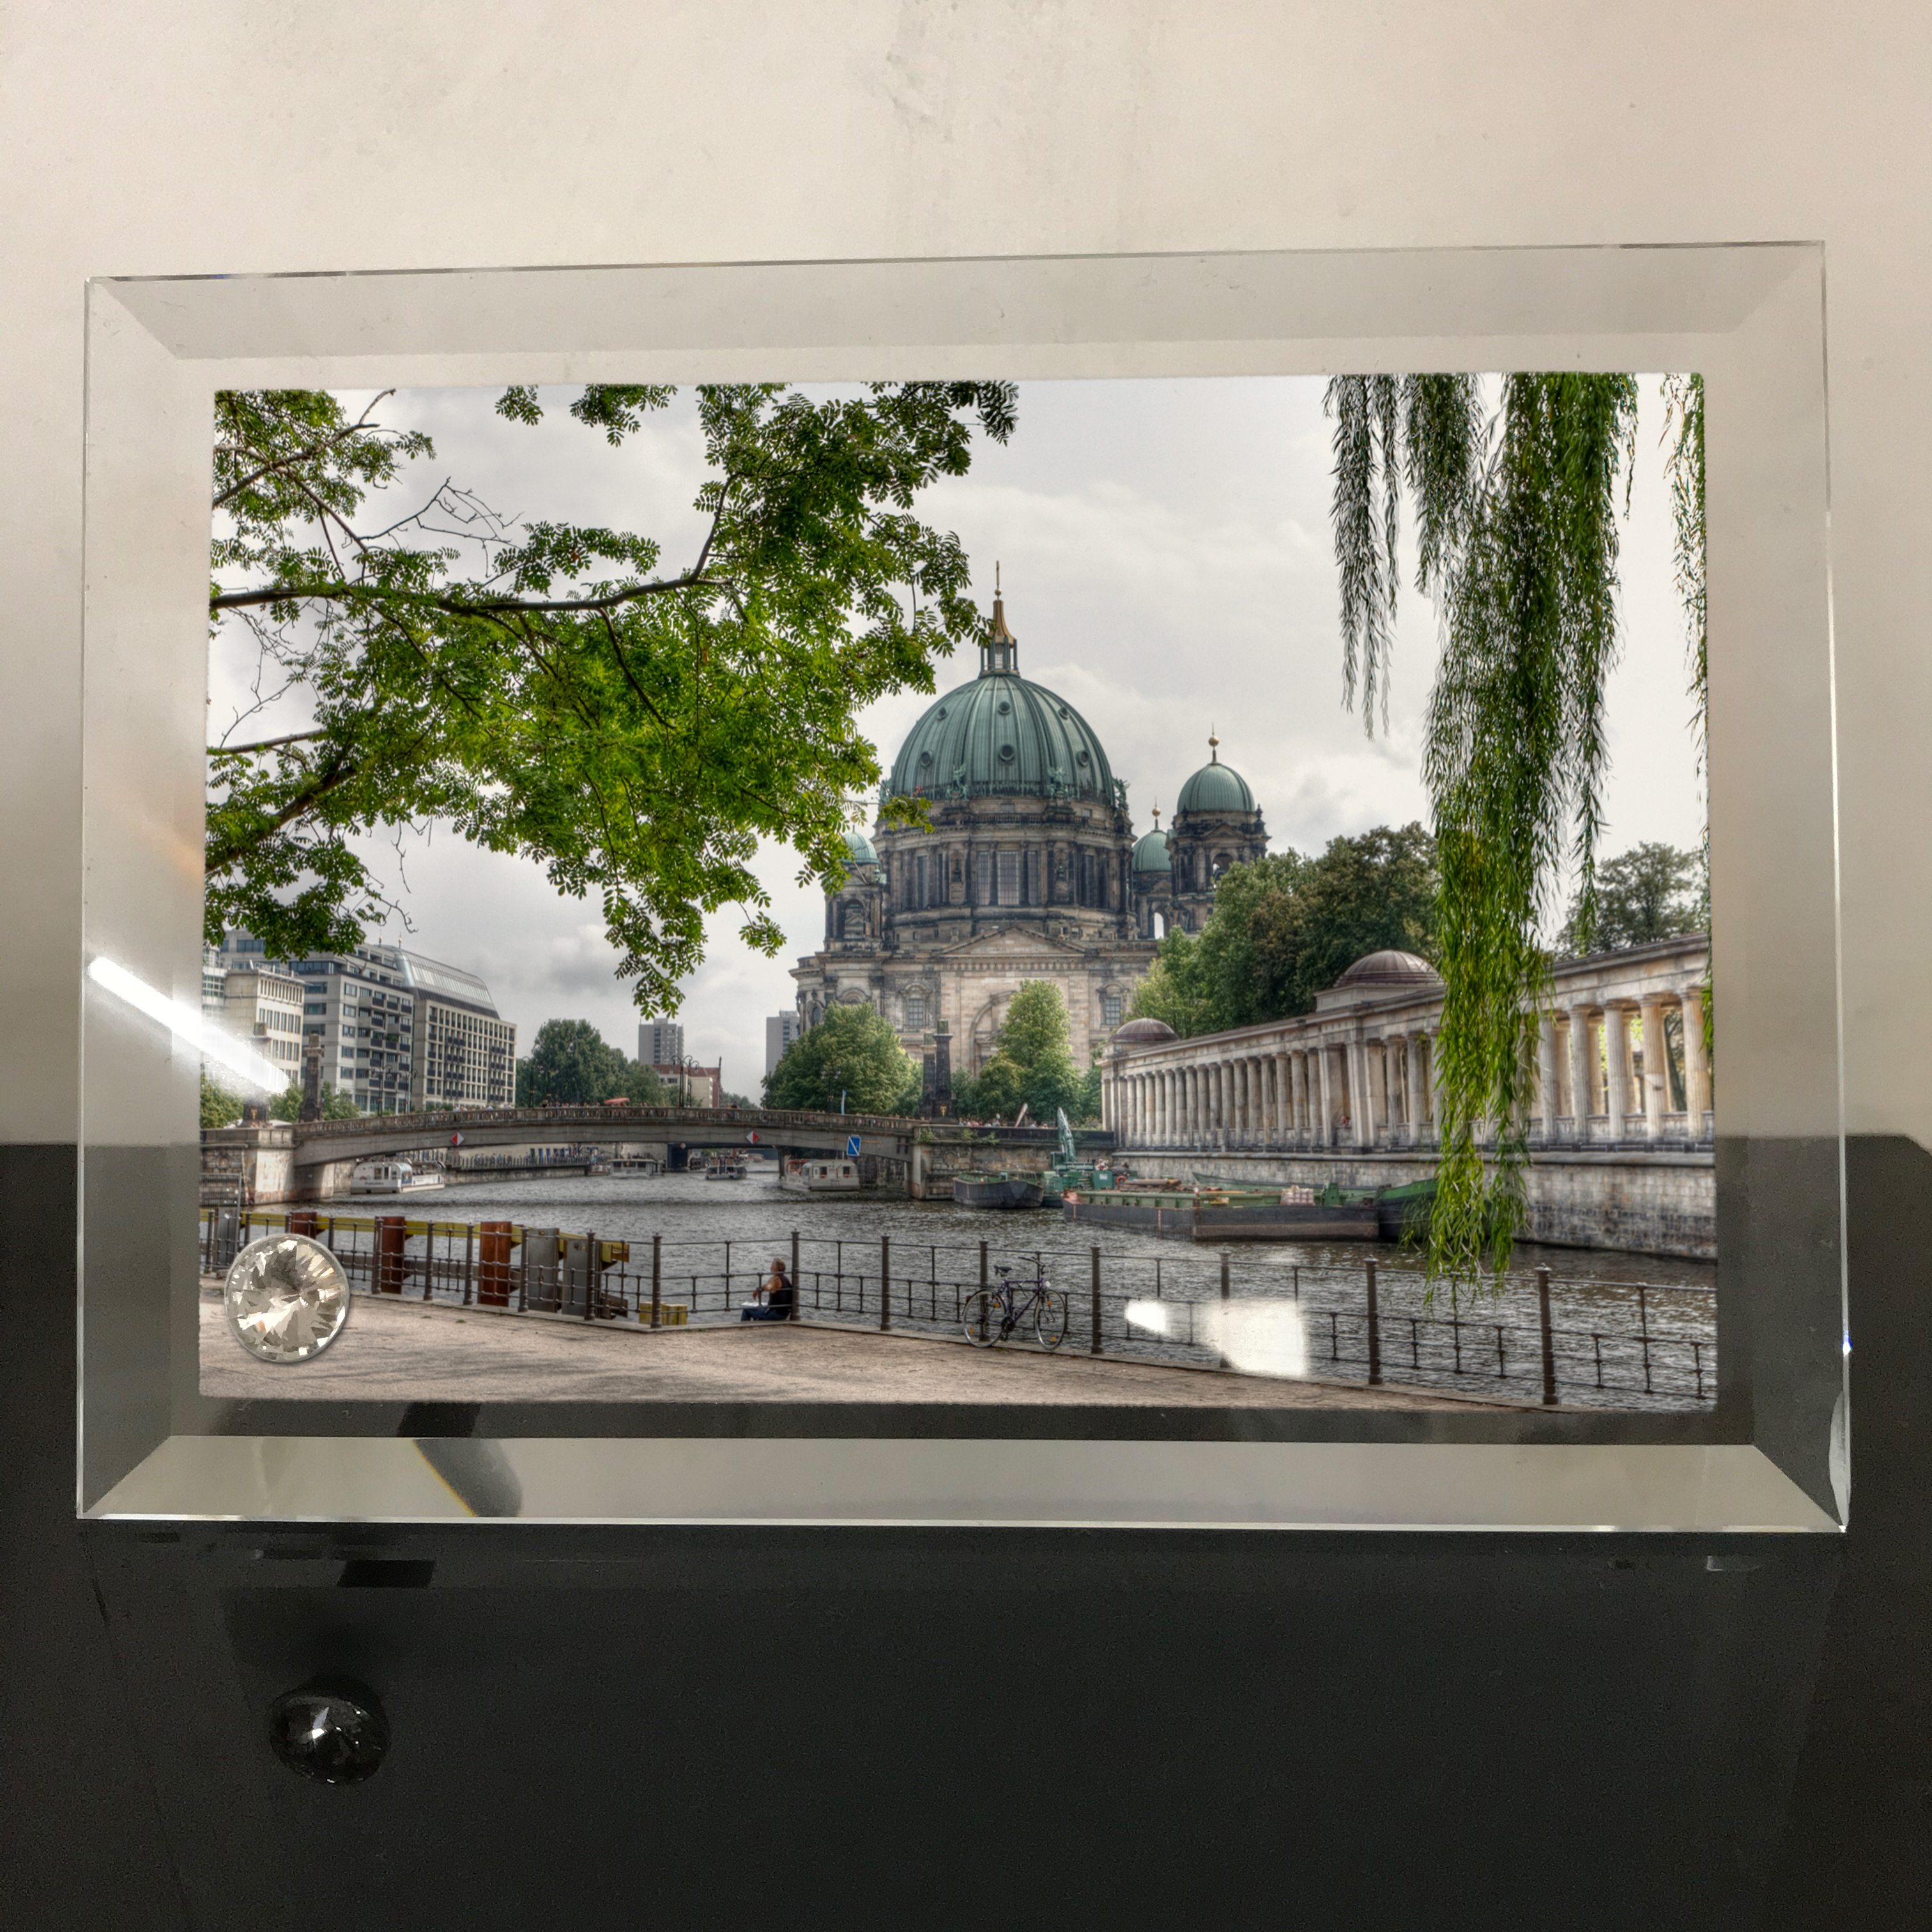 Khung hình thủy tinh 13x18 in hình Berlin Cathedral - nhà thờ chính tòa Berlin (1)Khung hình thủy tinh để bàn trang trí đẹp chủ đề tôn giáo